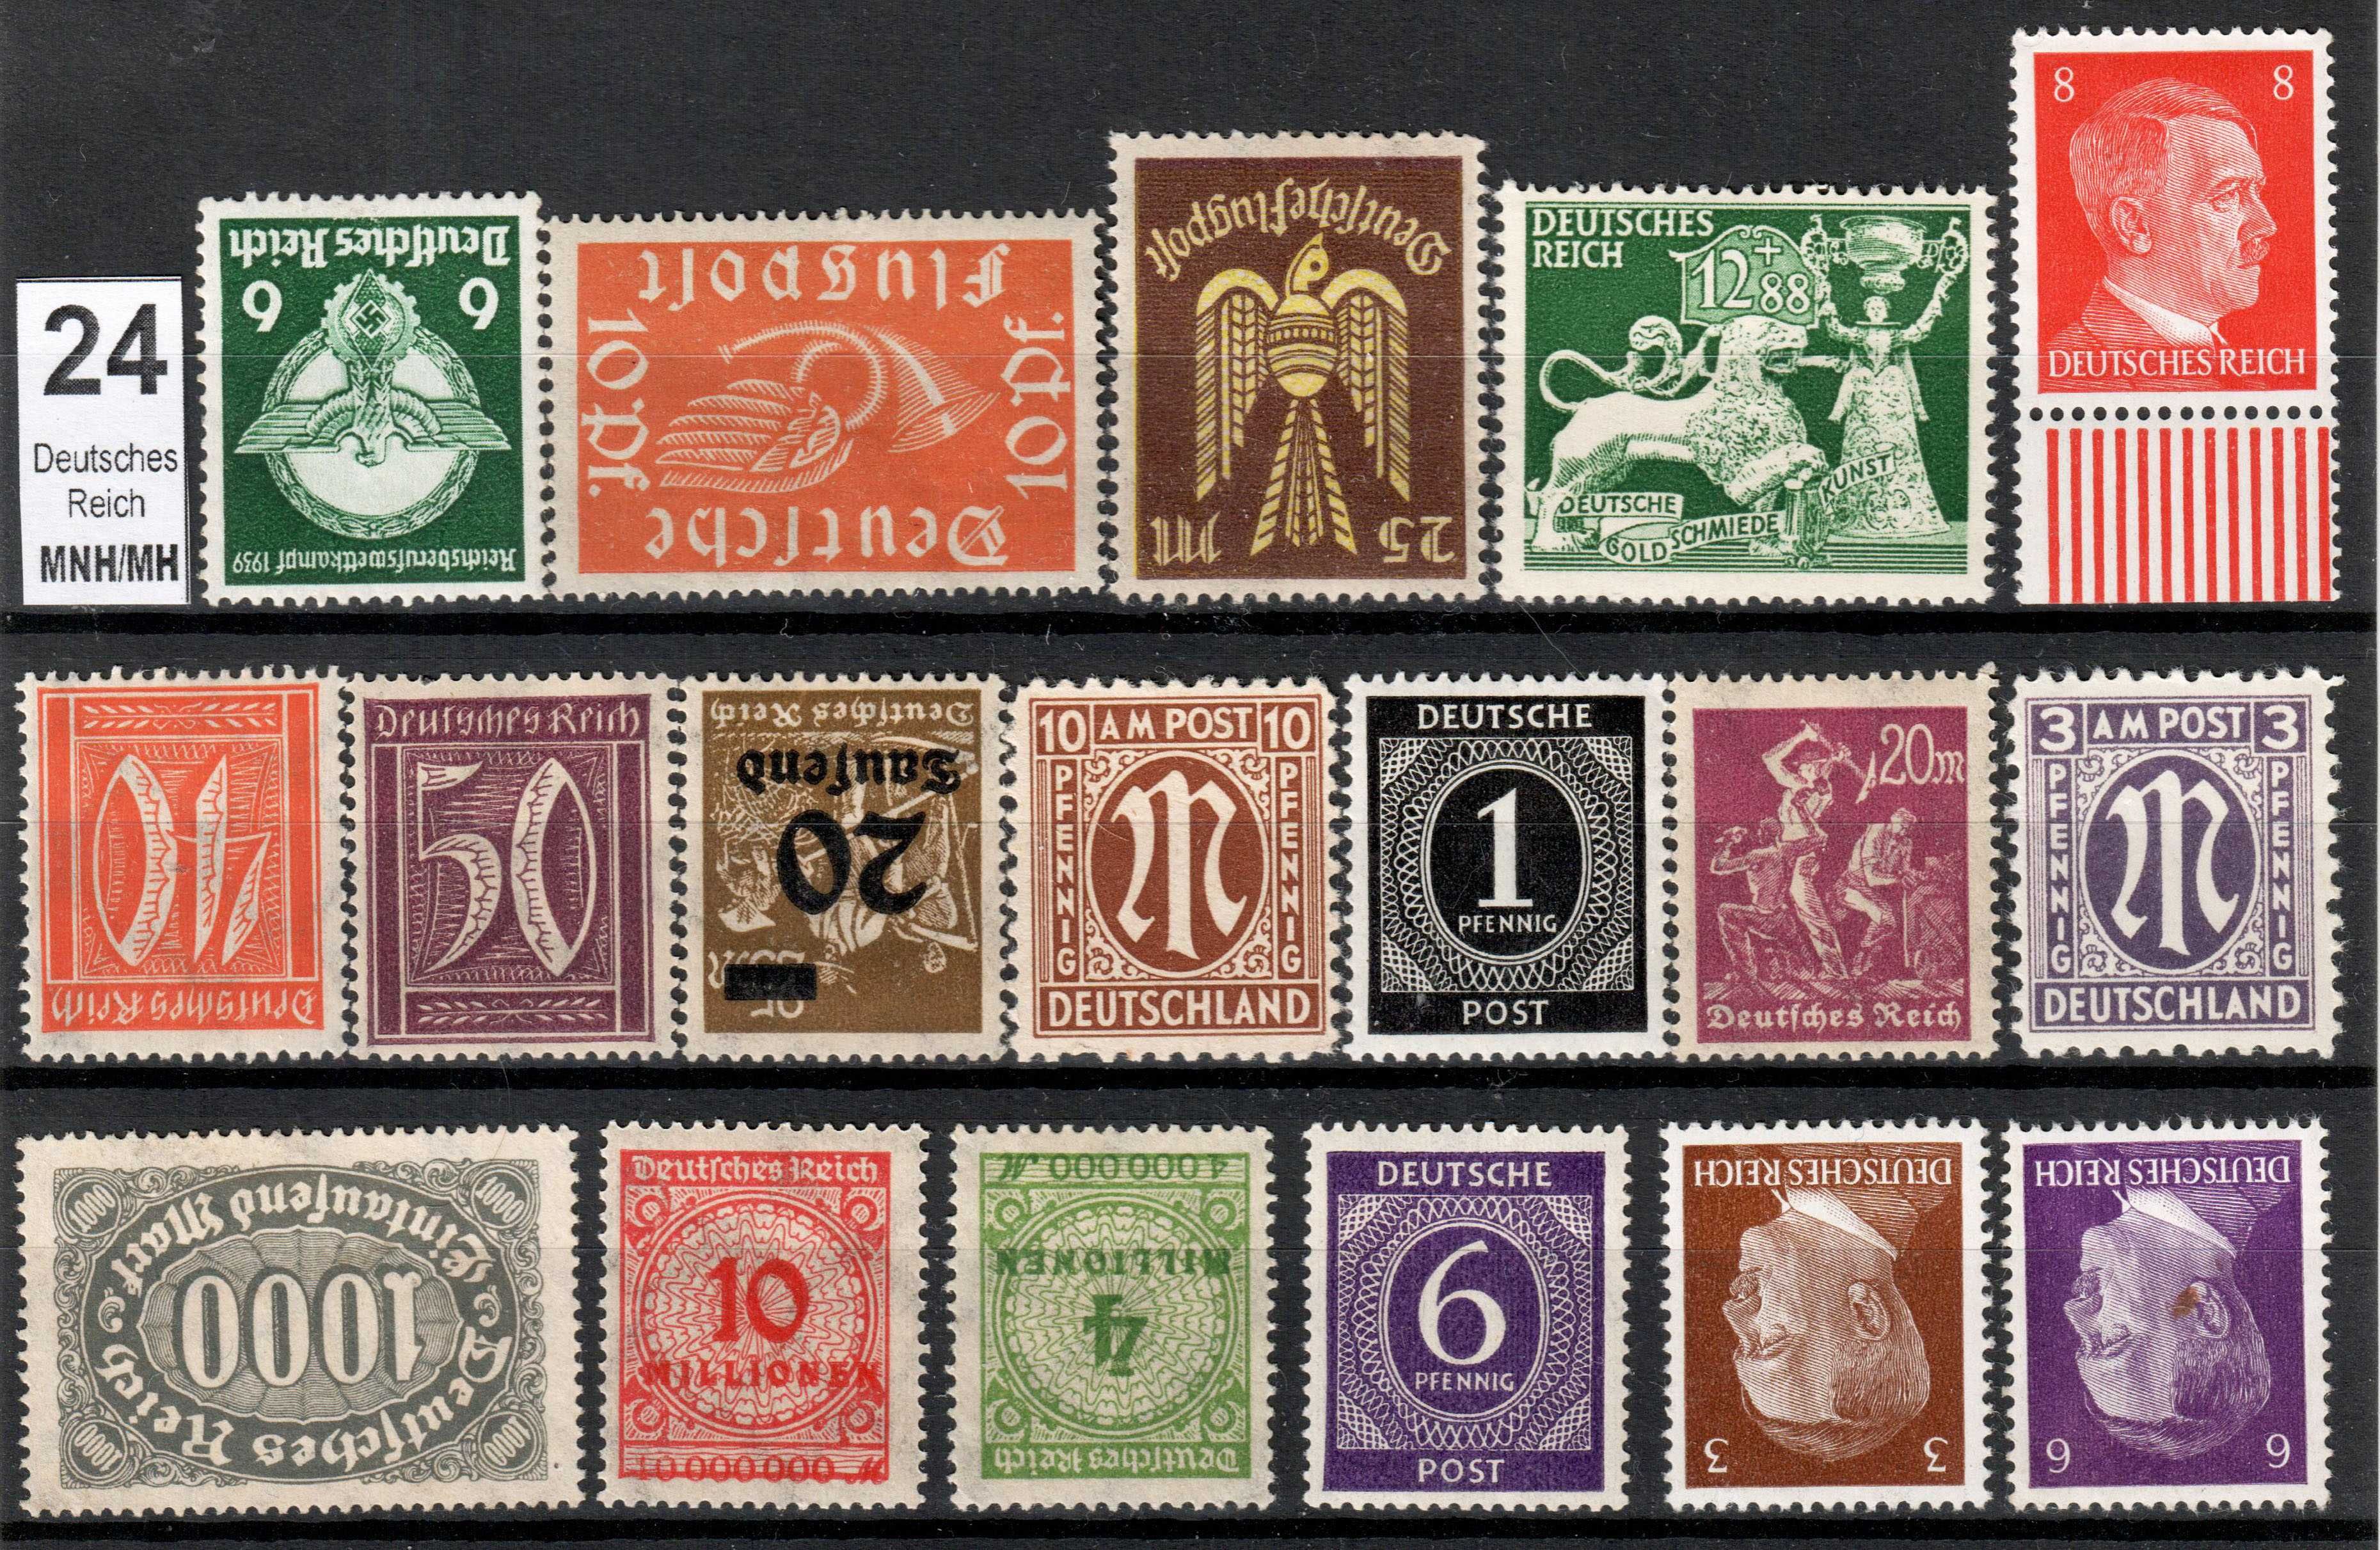 Lot timbre nestampilate Deutsches Reich (6 fotografii)